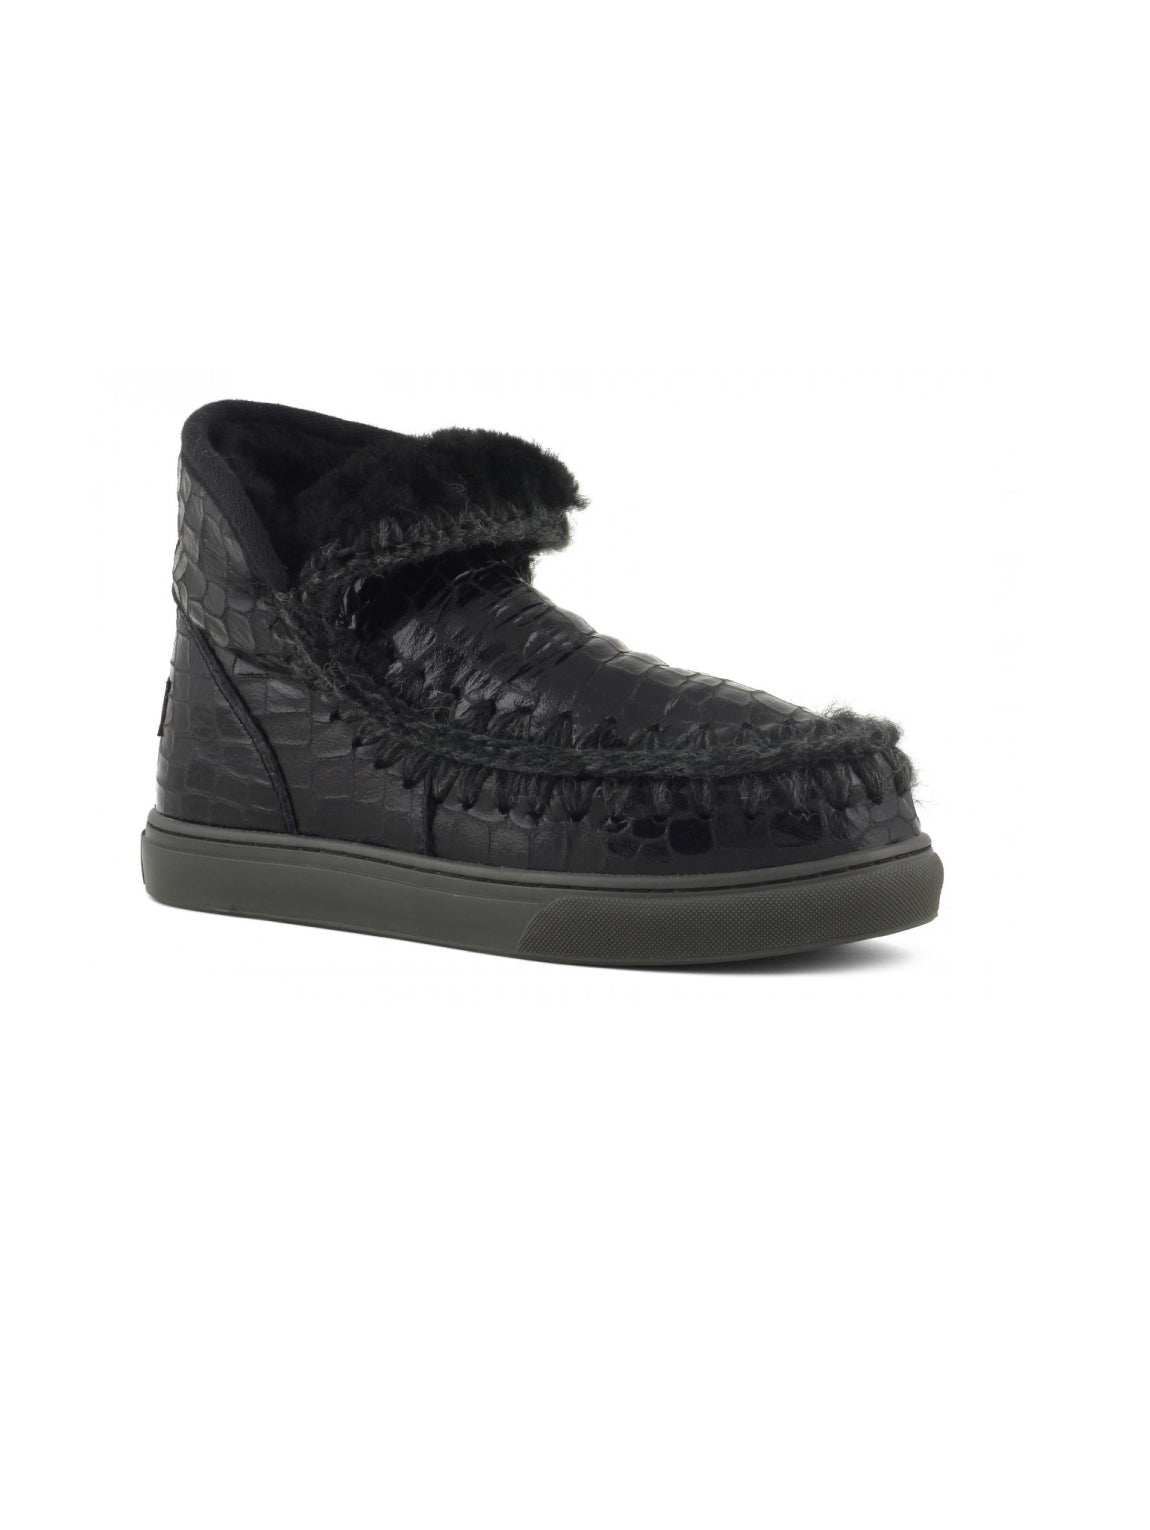 Stiefel mit Kokosnuss-Print und Sneaker-Sohle – Schwarz